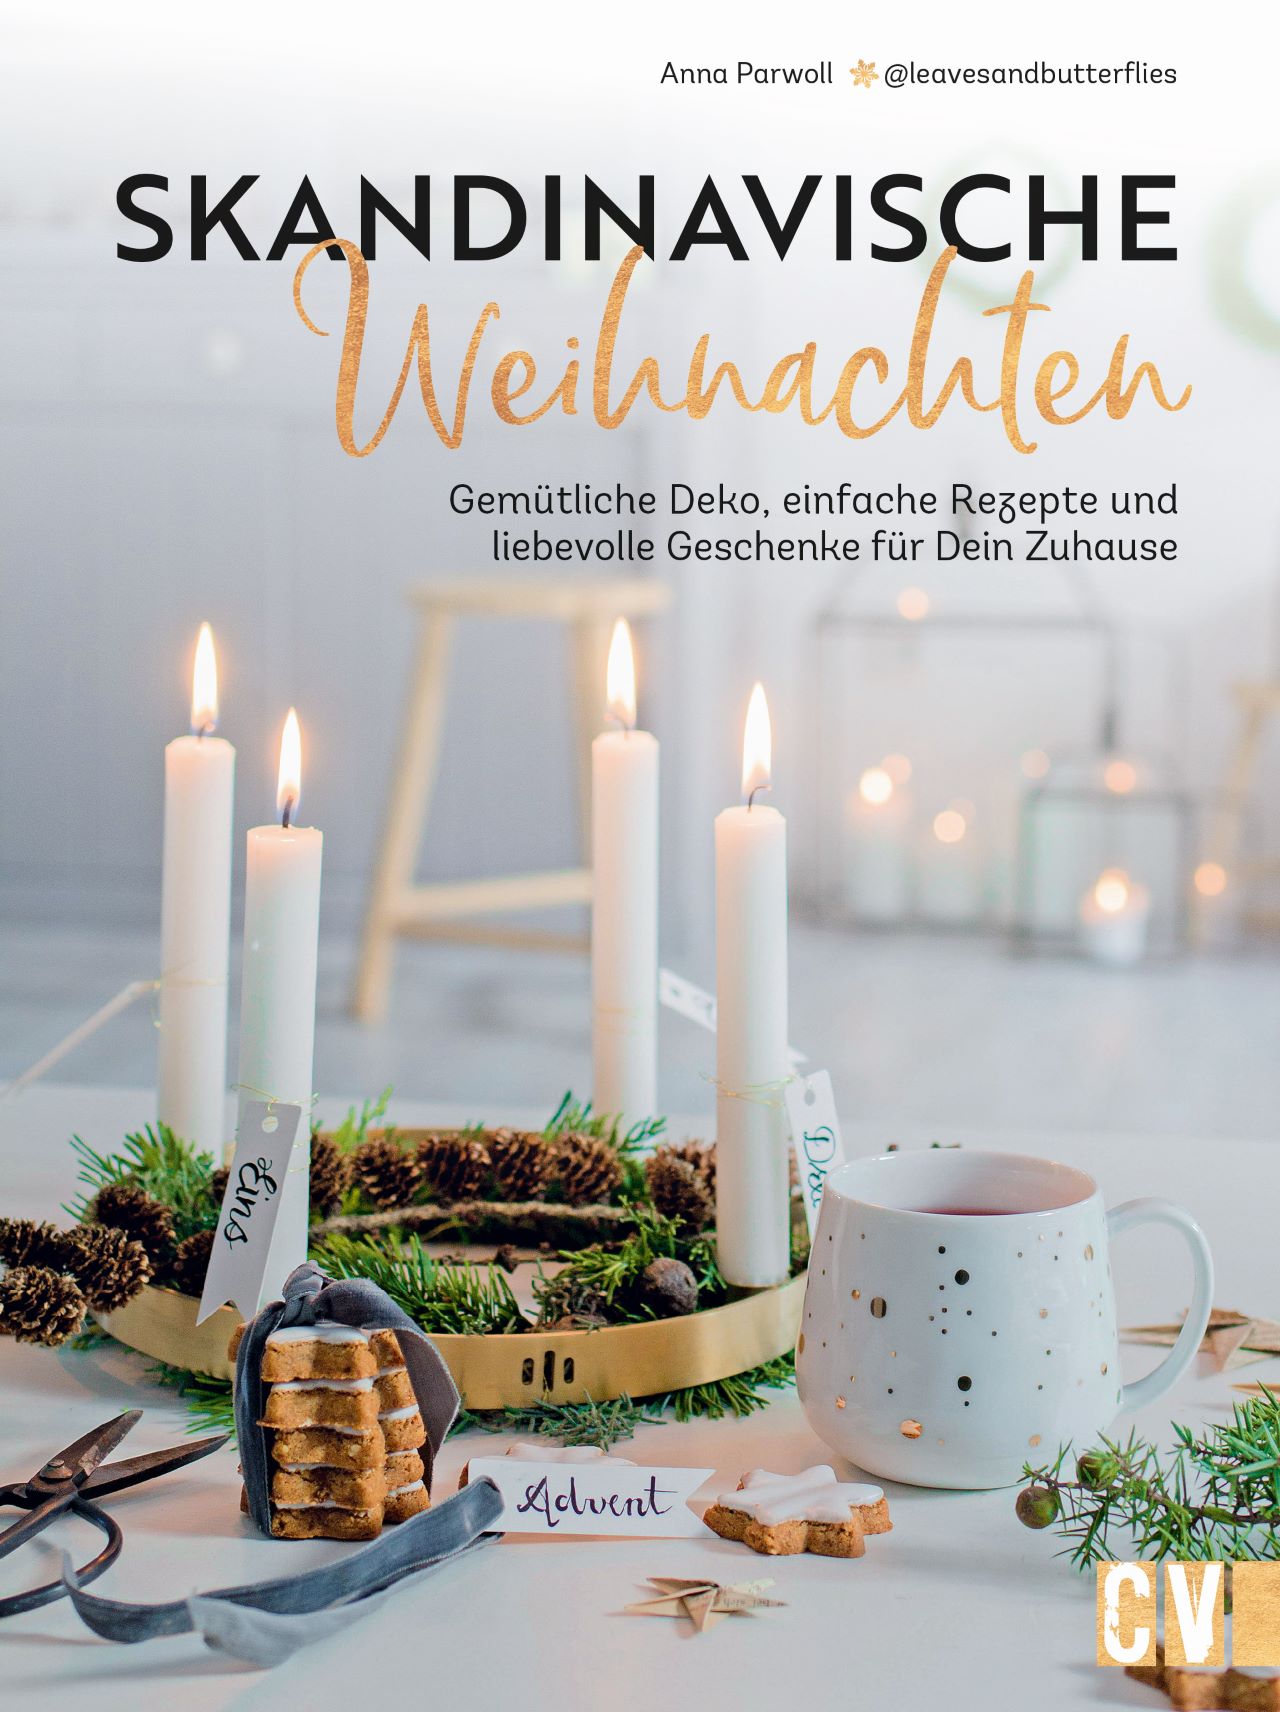 Anna Parwoll; Karen Lühning; Karen Lühning; Christine Schnappinger / Skandinavis - Bild 1 von 1